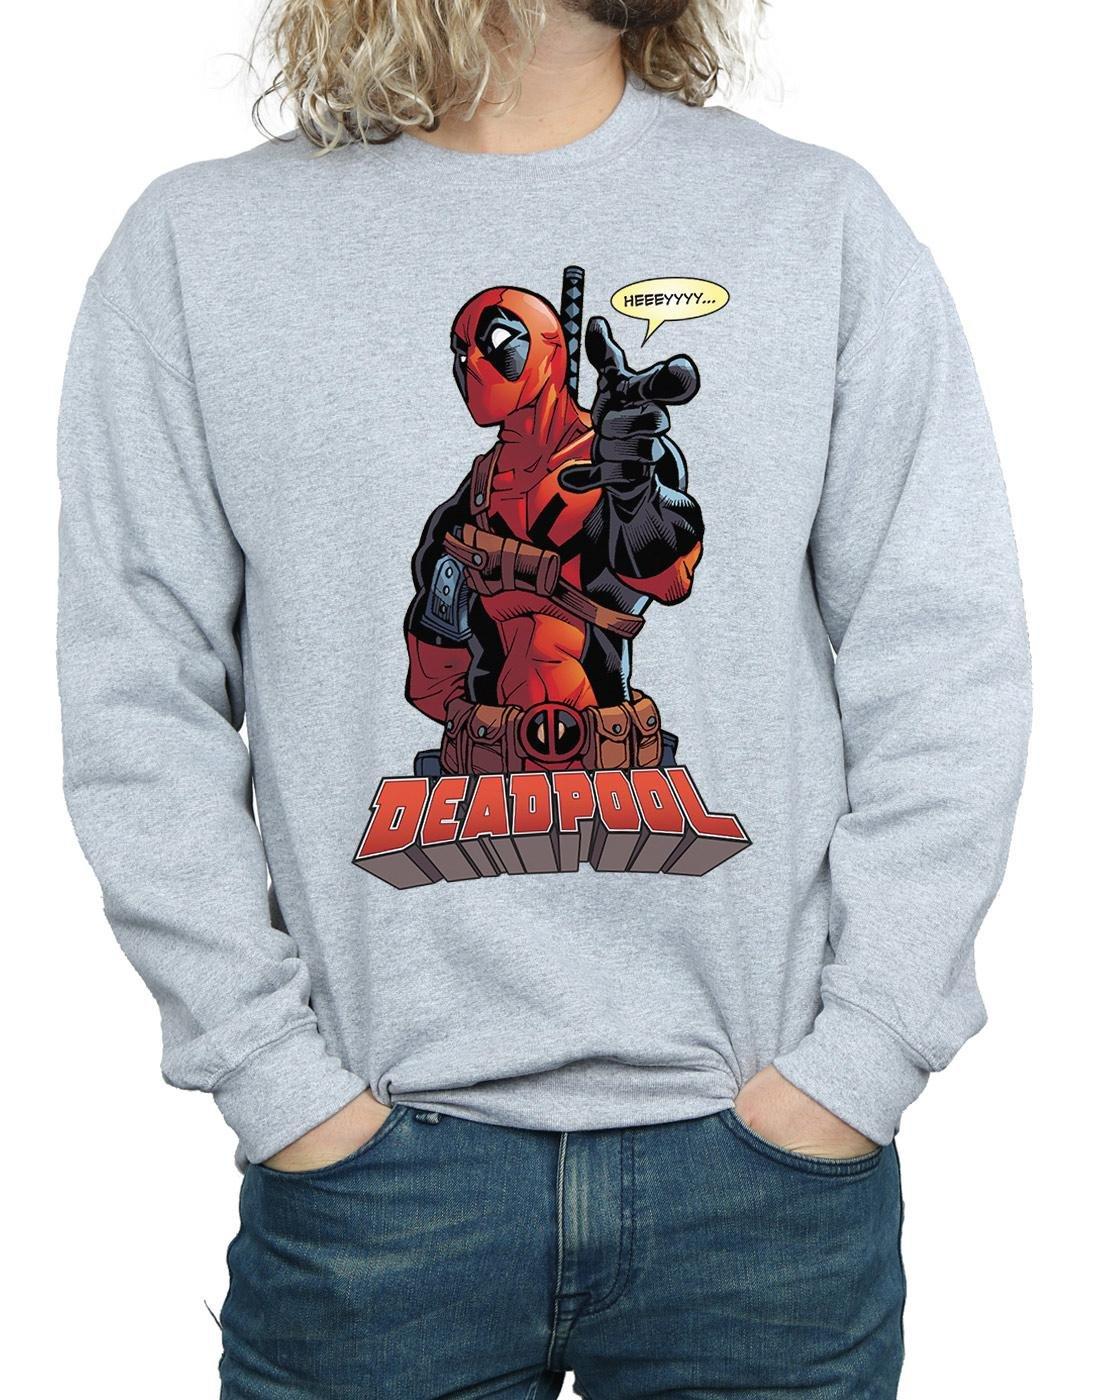 Deadpool  Hey You Sweatshirt 